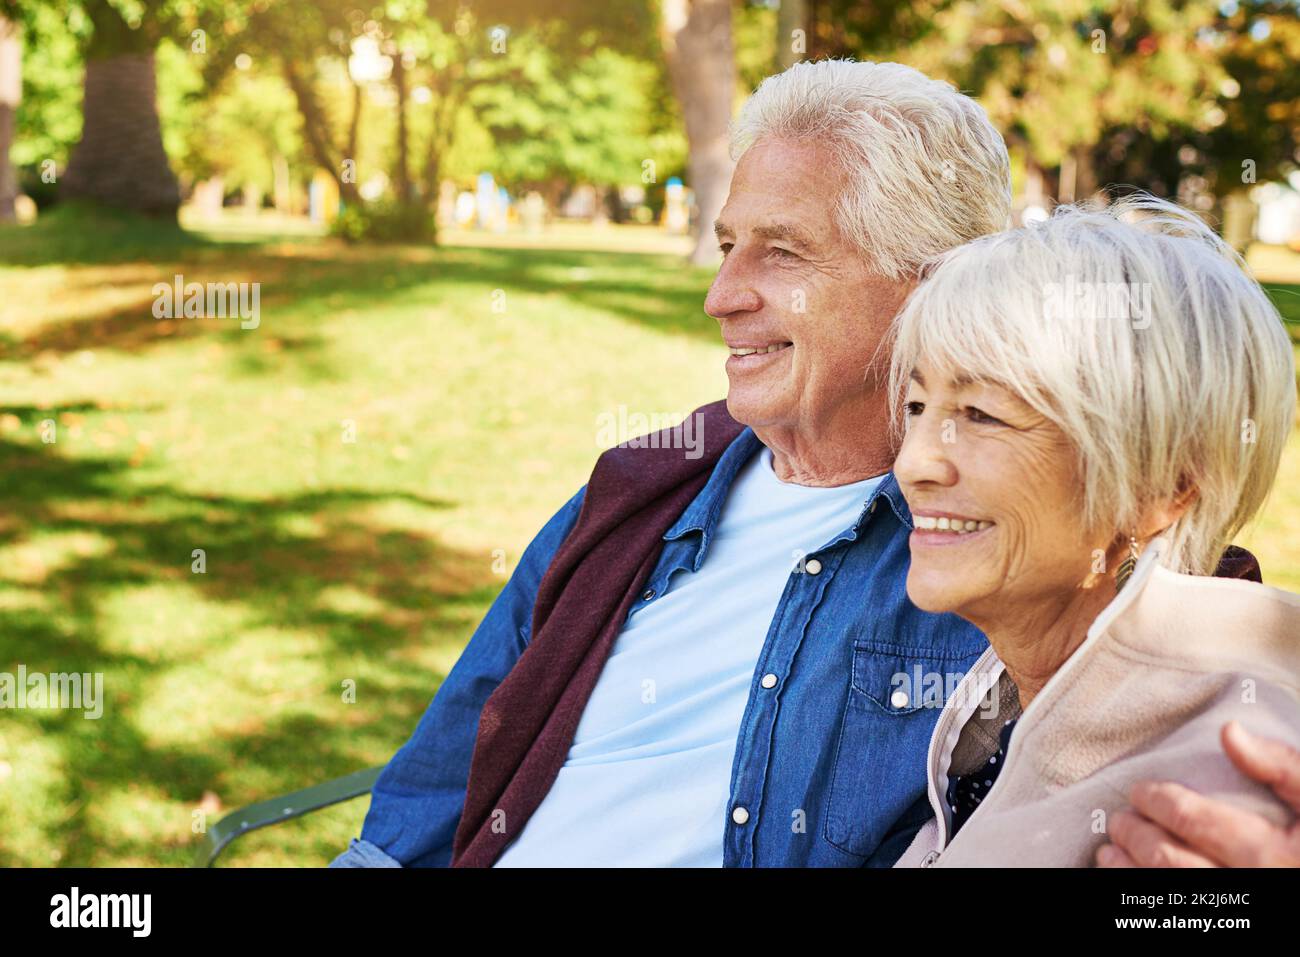 Retirementlet il rilassamento comincia. Scatto di una coppia anziana felice nel parco. Foto Stock